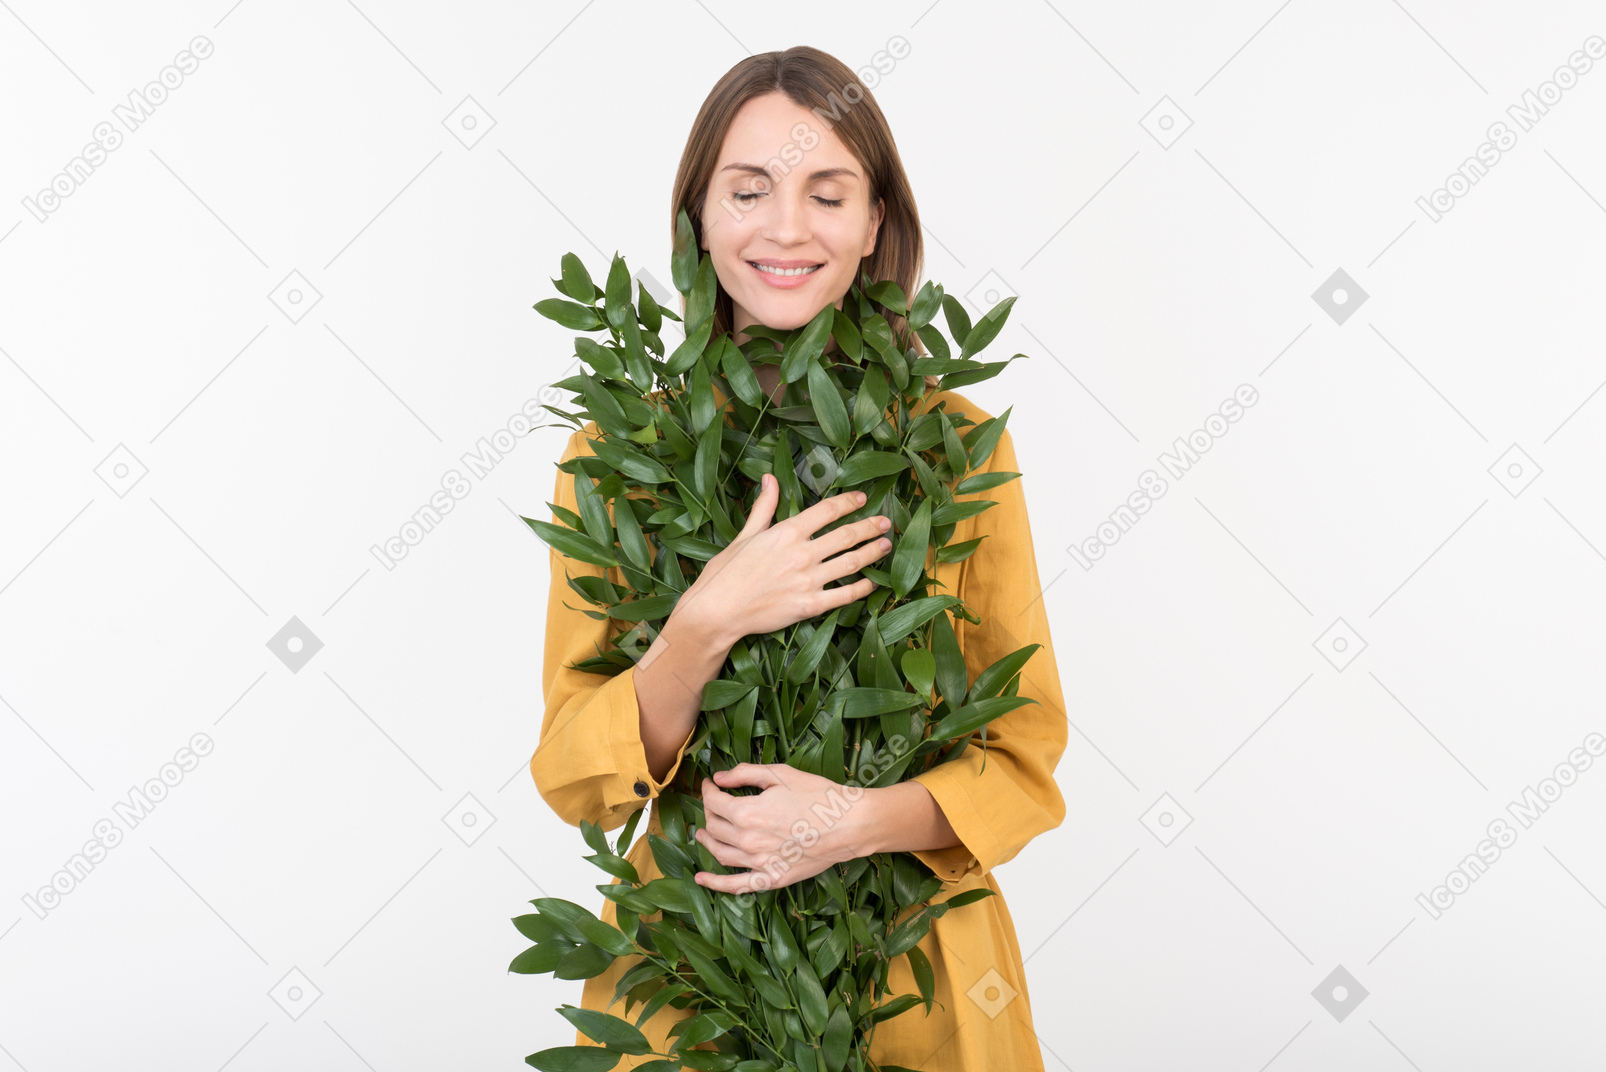 Giovane donna che abbraccia i rami verdi